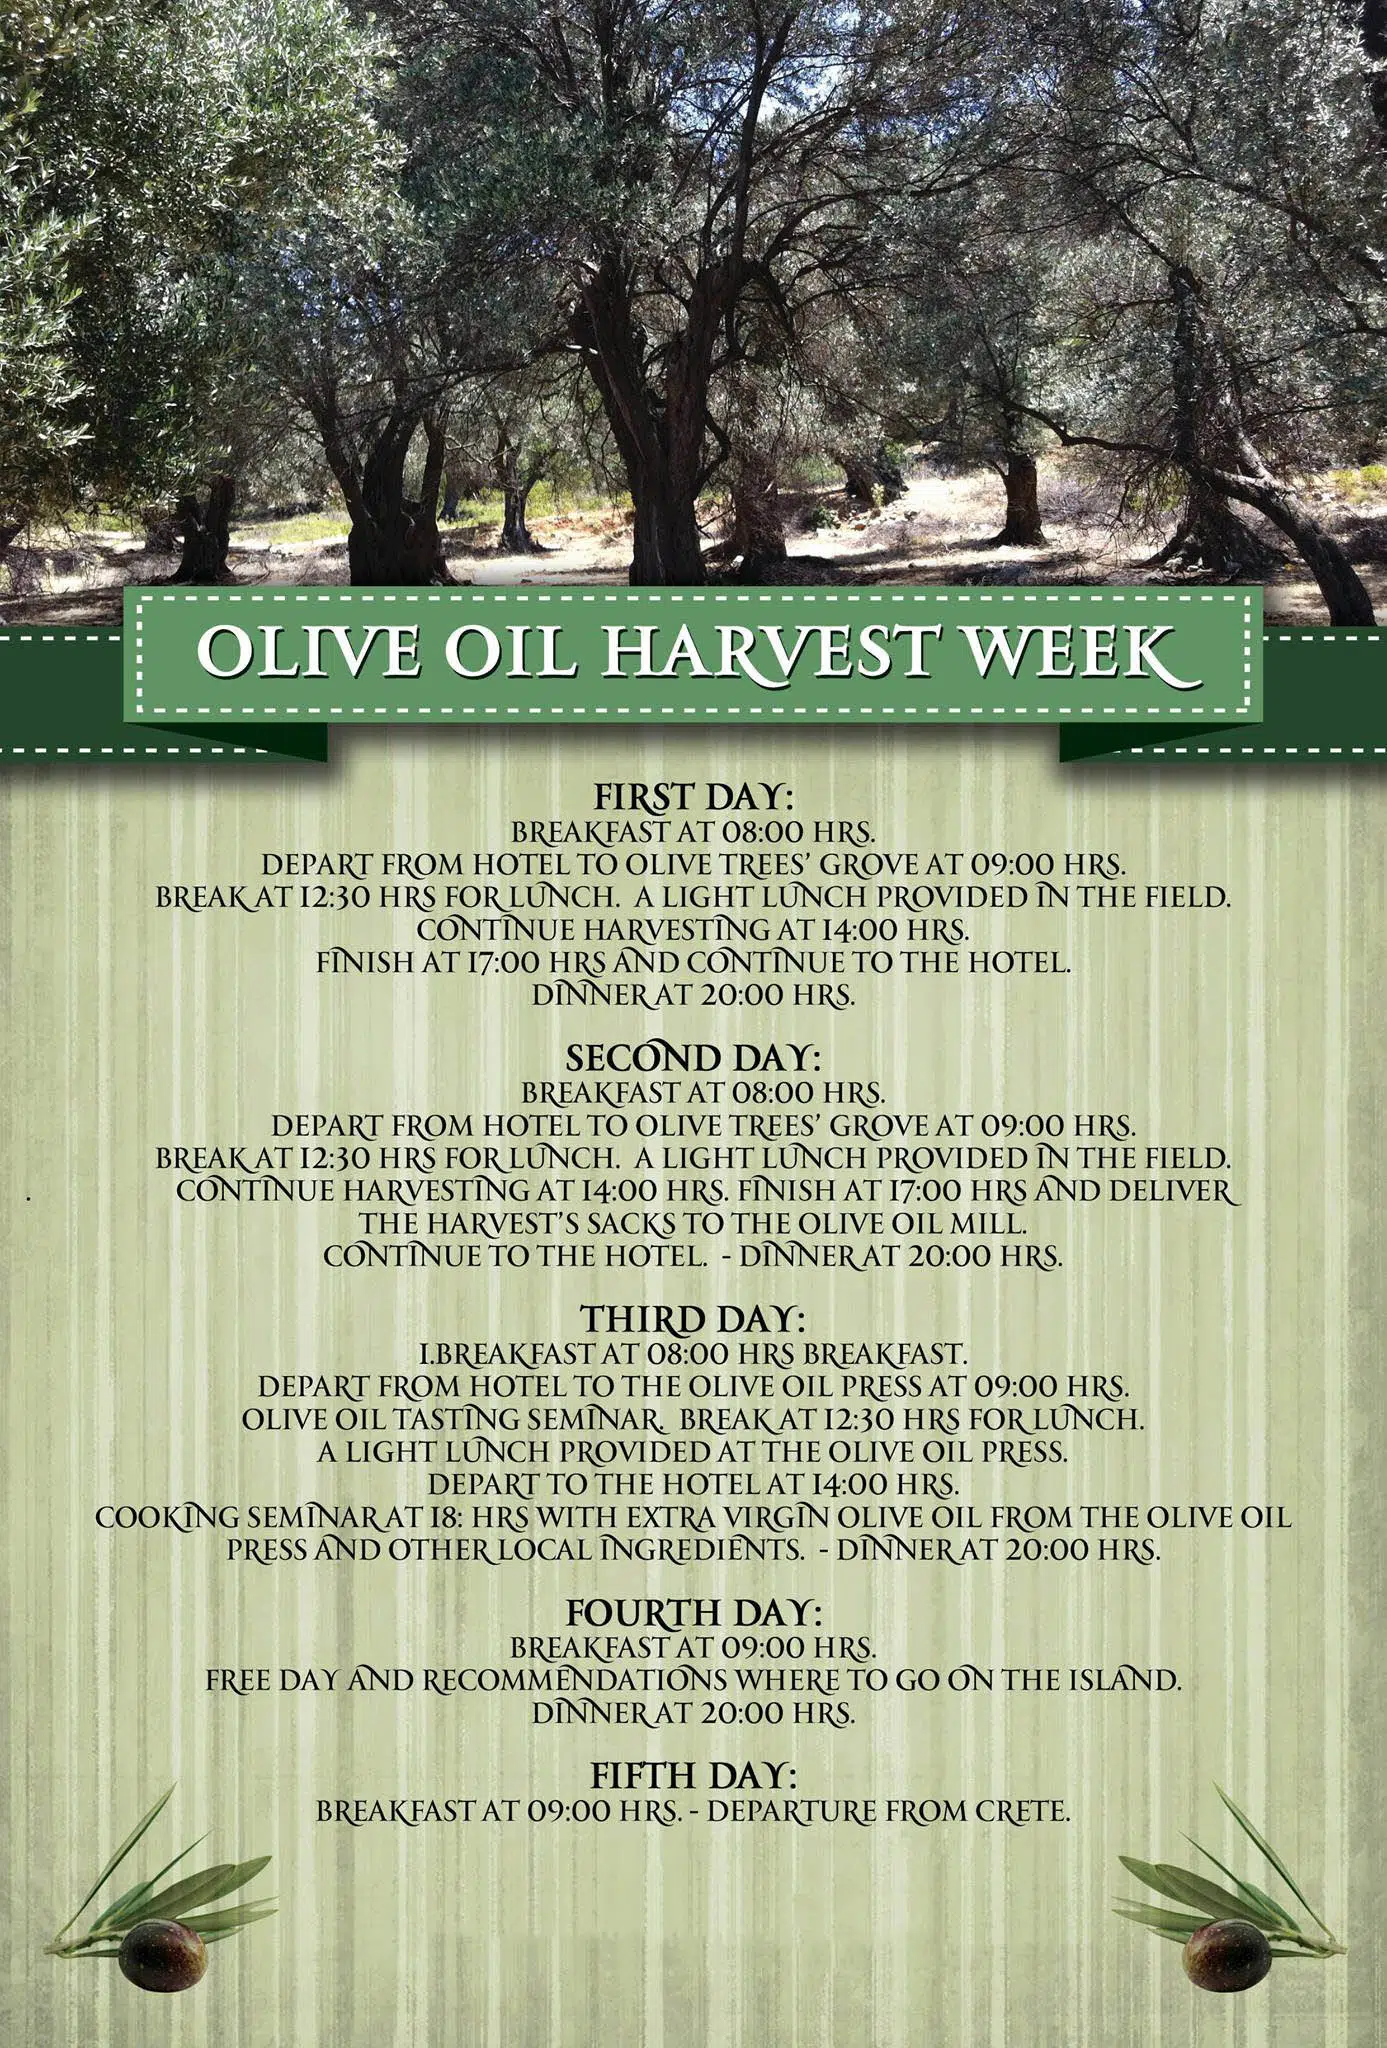 Økoturisme Kreta Grækenland - høst af olivenolie